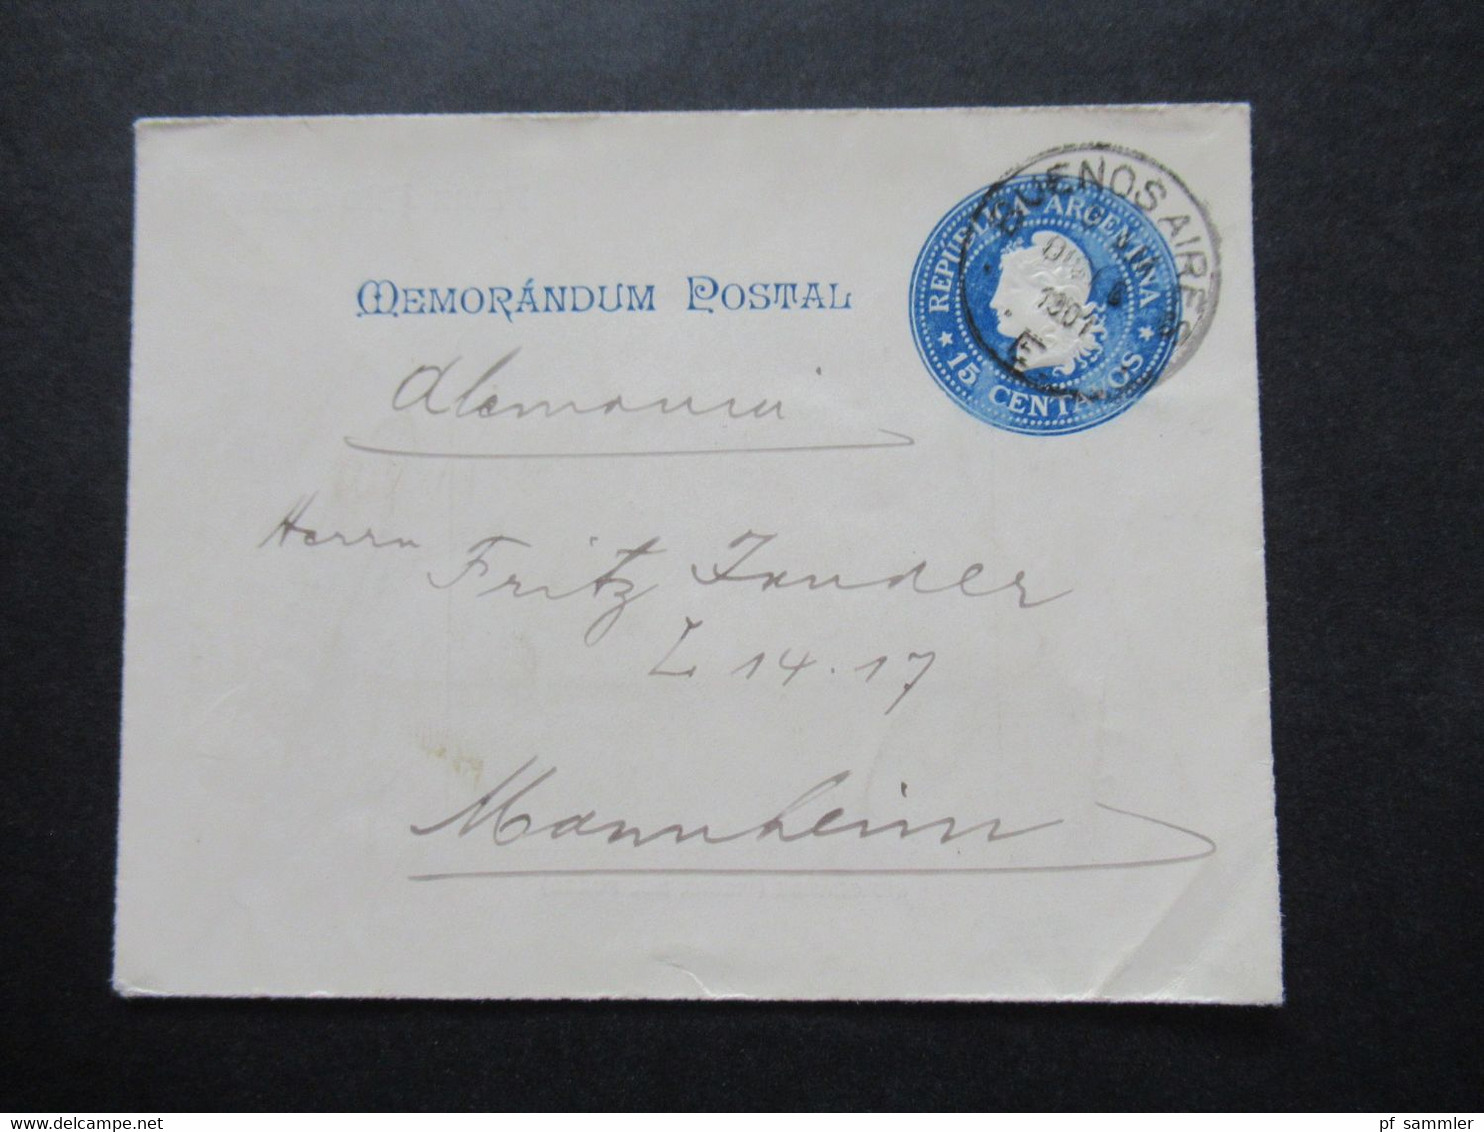 Argentinien 1901 Memorandum Postal Ganzsachen Umschlag Nach Mannheim Innen: Rio Grande (Tierra Del Fuego) - Postal Stationery